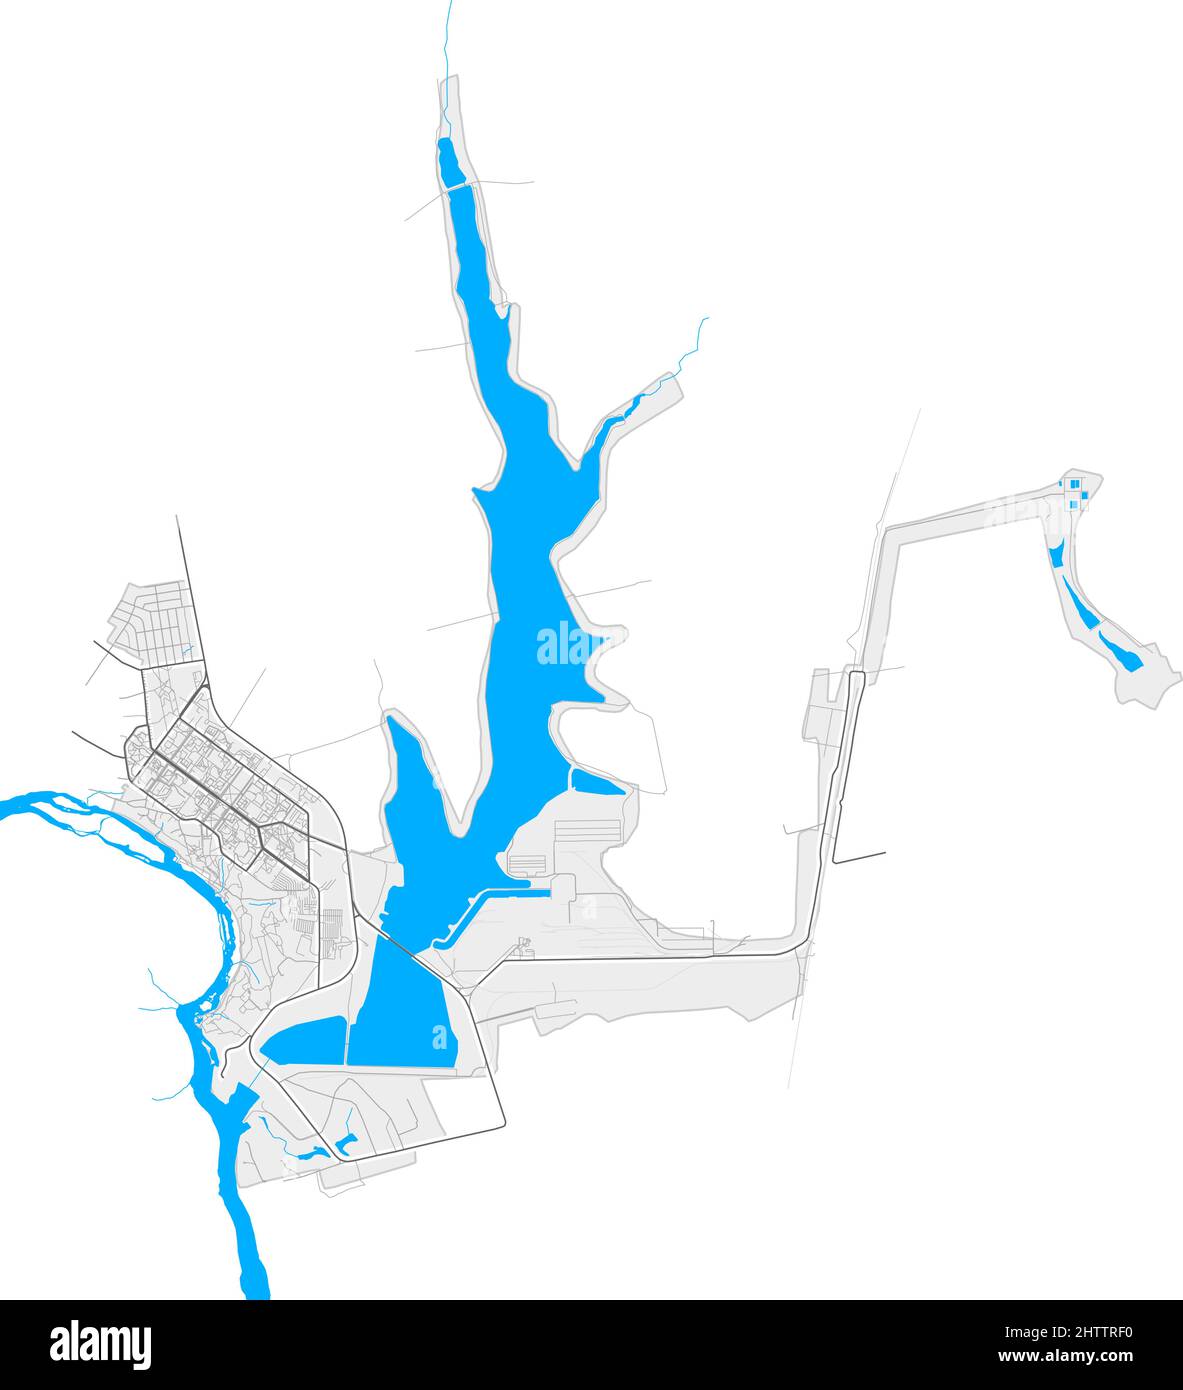 Yuzhnoukrainsk, Oblast Mykolaiv, Ukraine hochauflösende Vektorkarte mit Stadtgrenzen und umrissenen Pfaden. Weiße zusätzliche Umrisse für Hauptstraßen. Stock Vektor